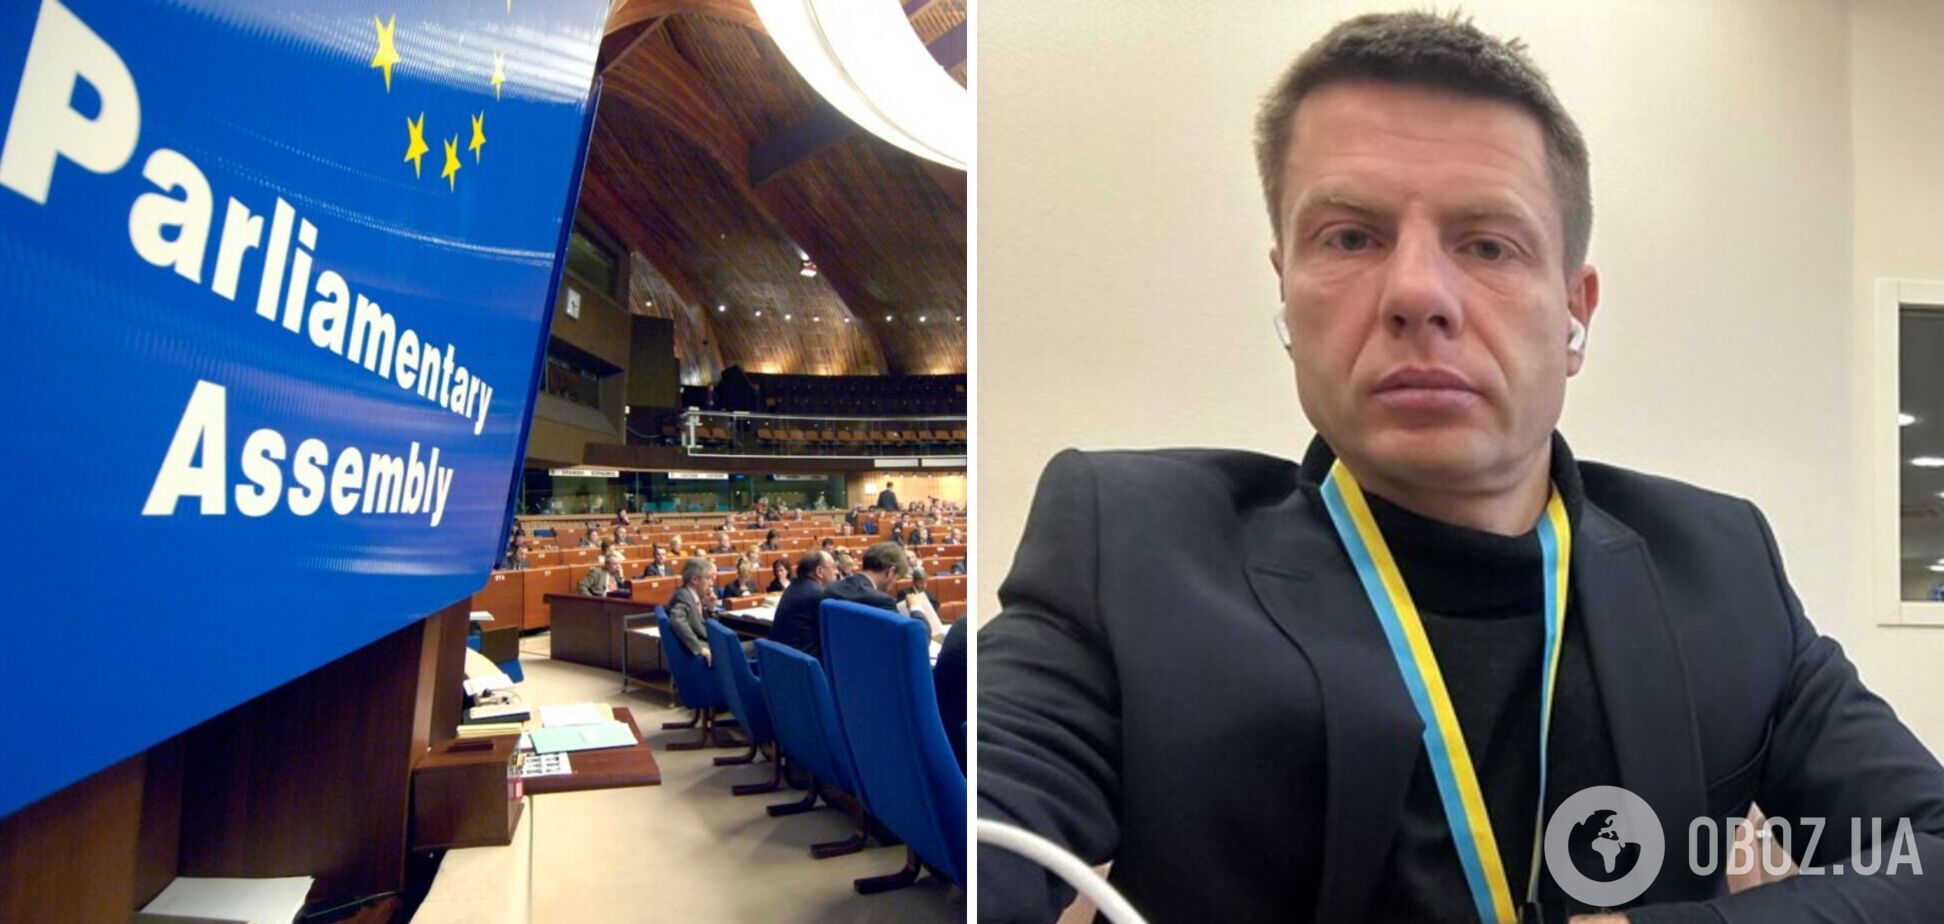 Комітет з міграції в ПАРЄ вперше очолить нардеп від України